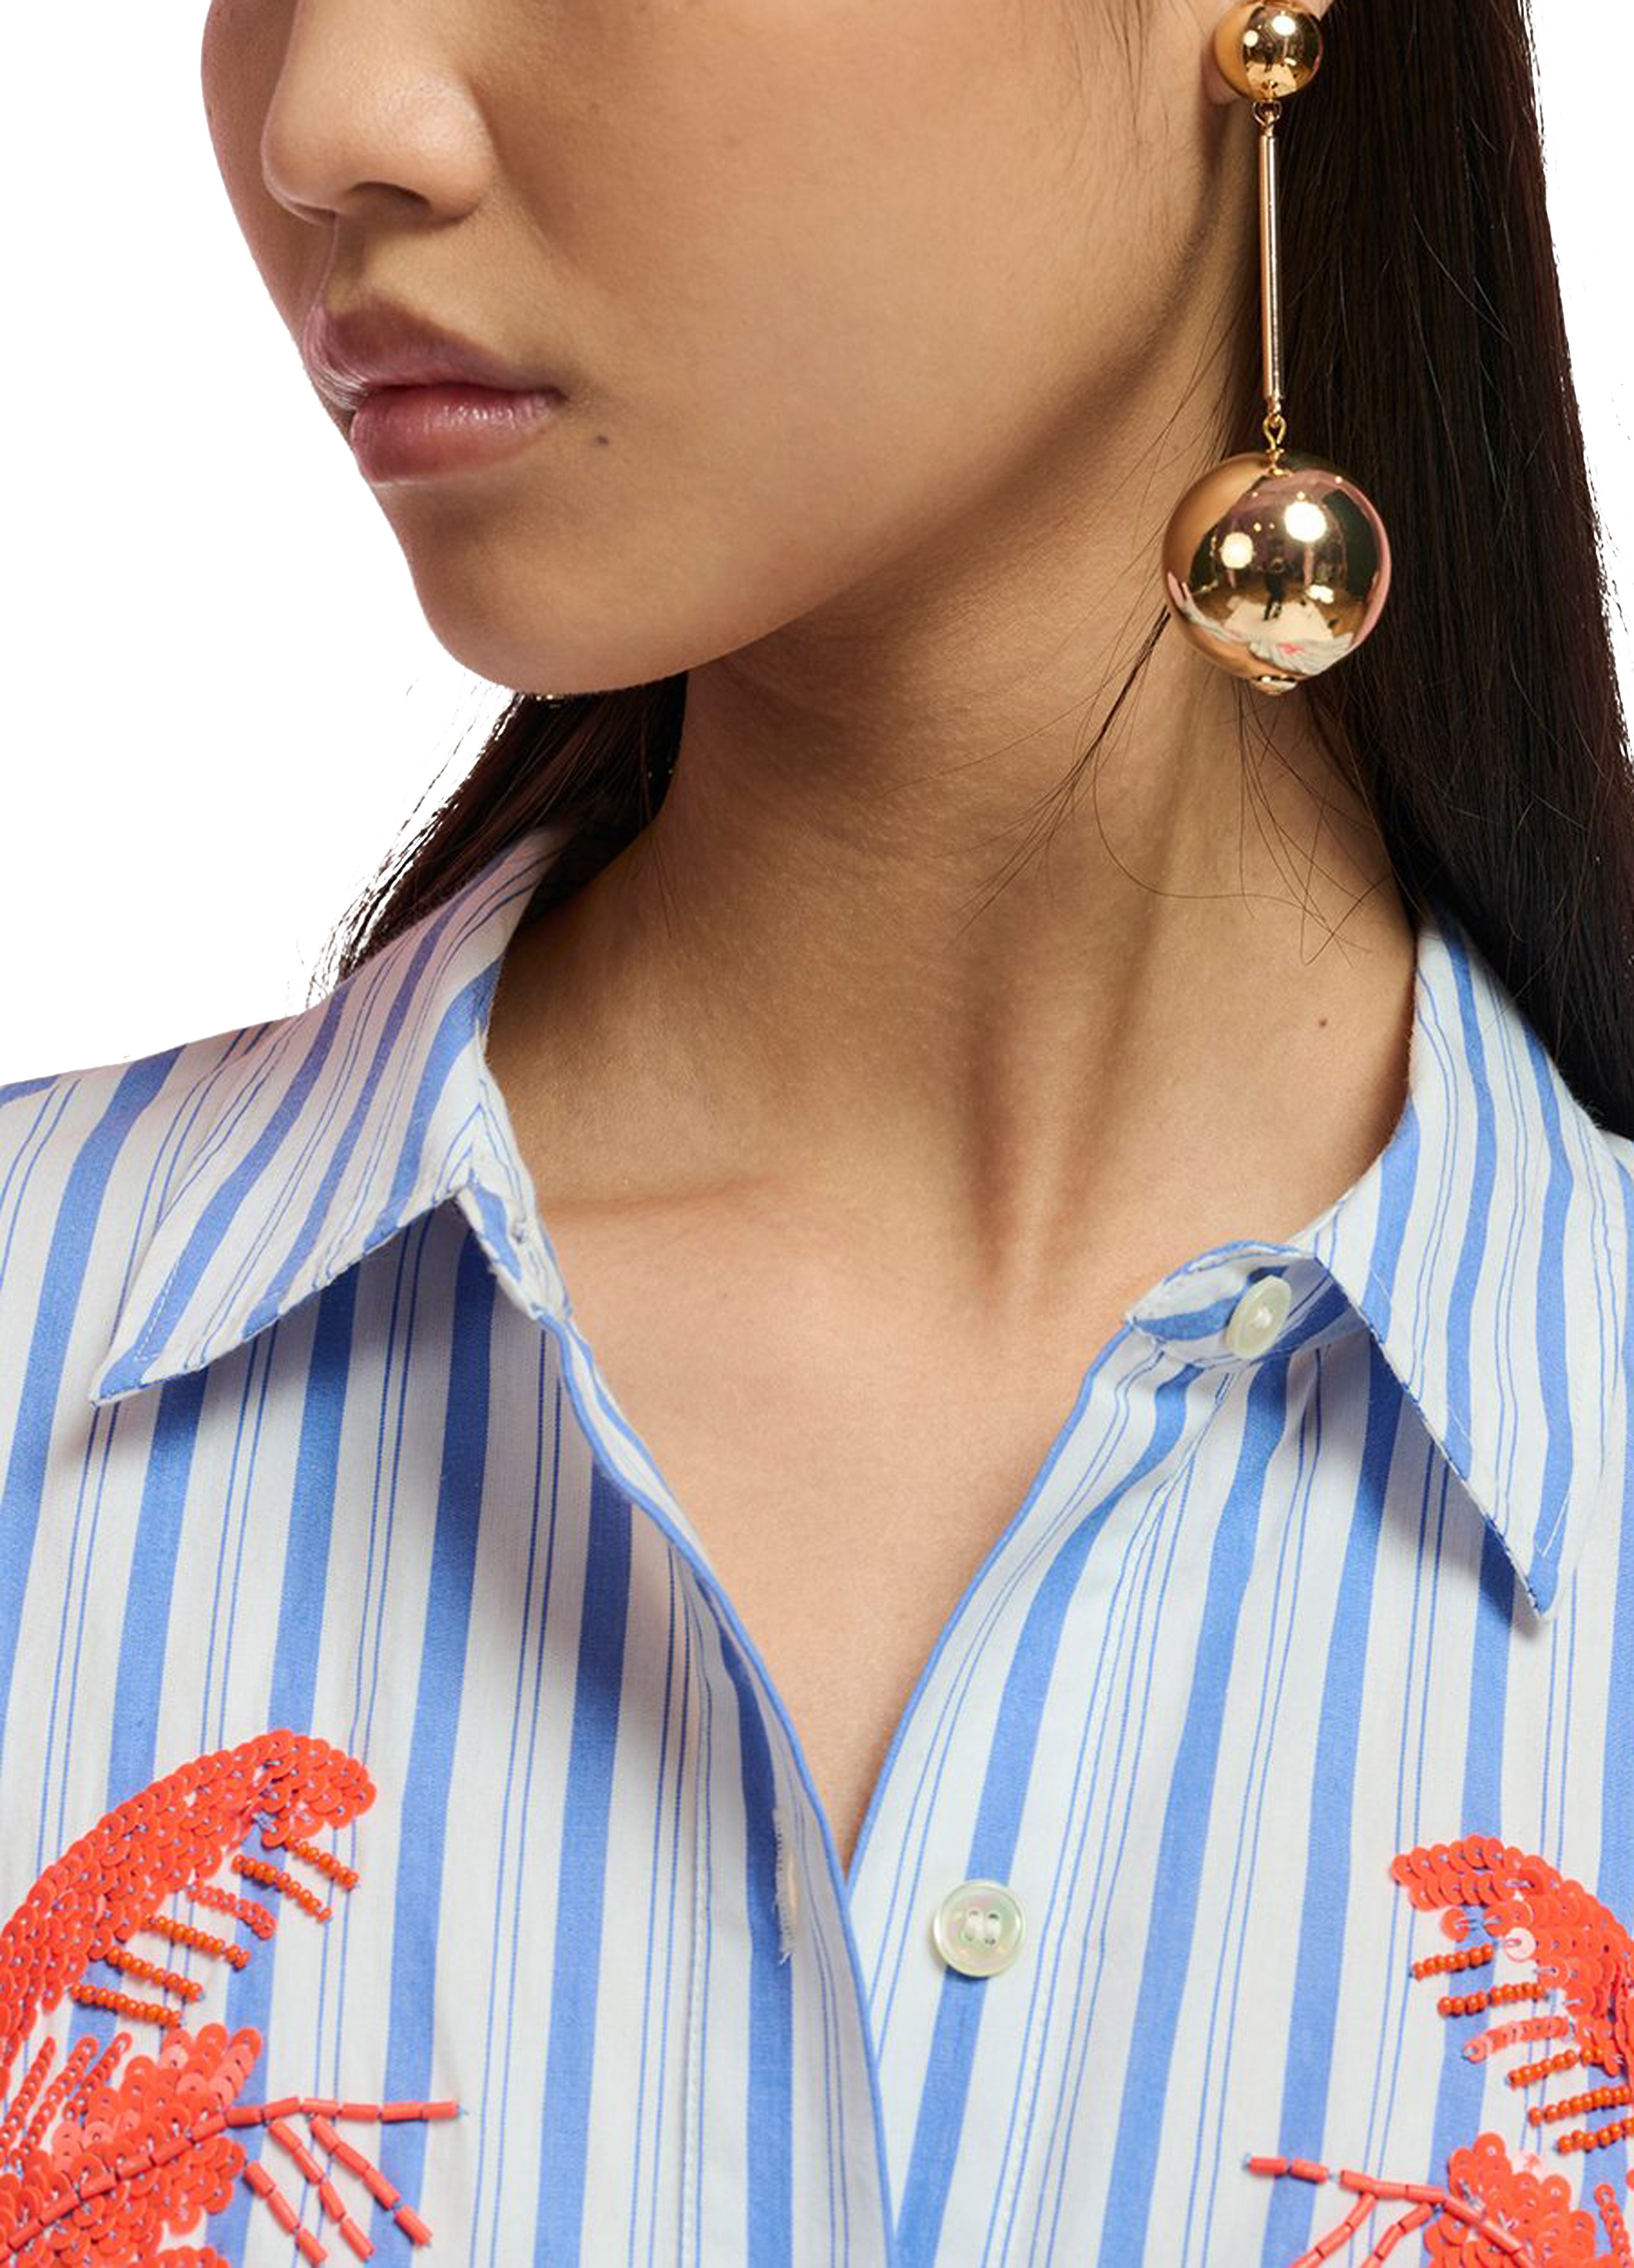  Falberta earrings